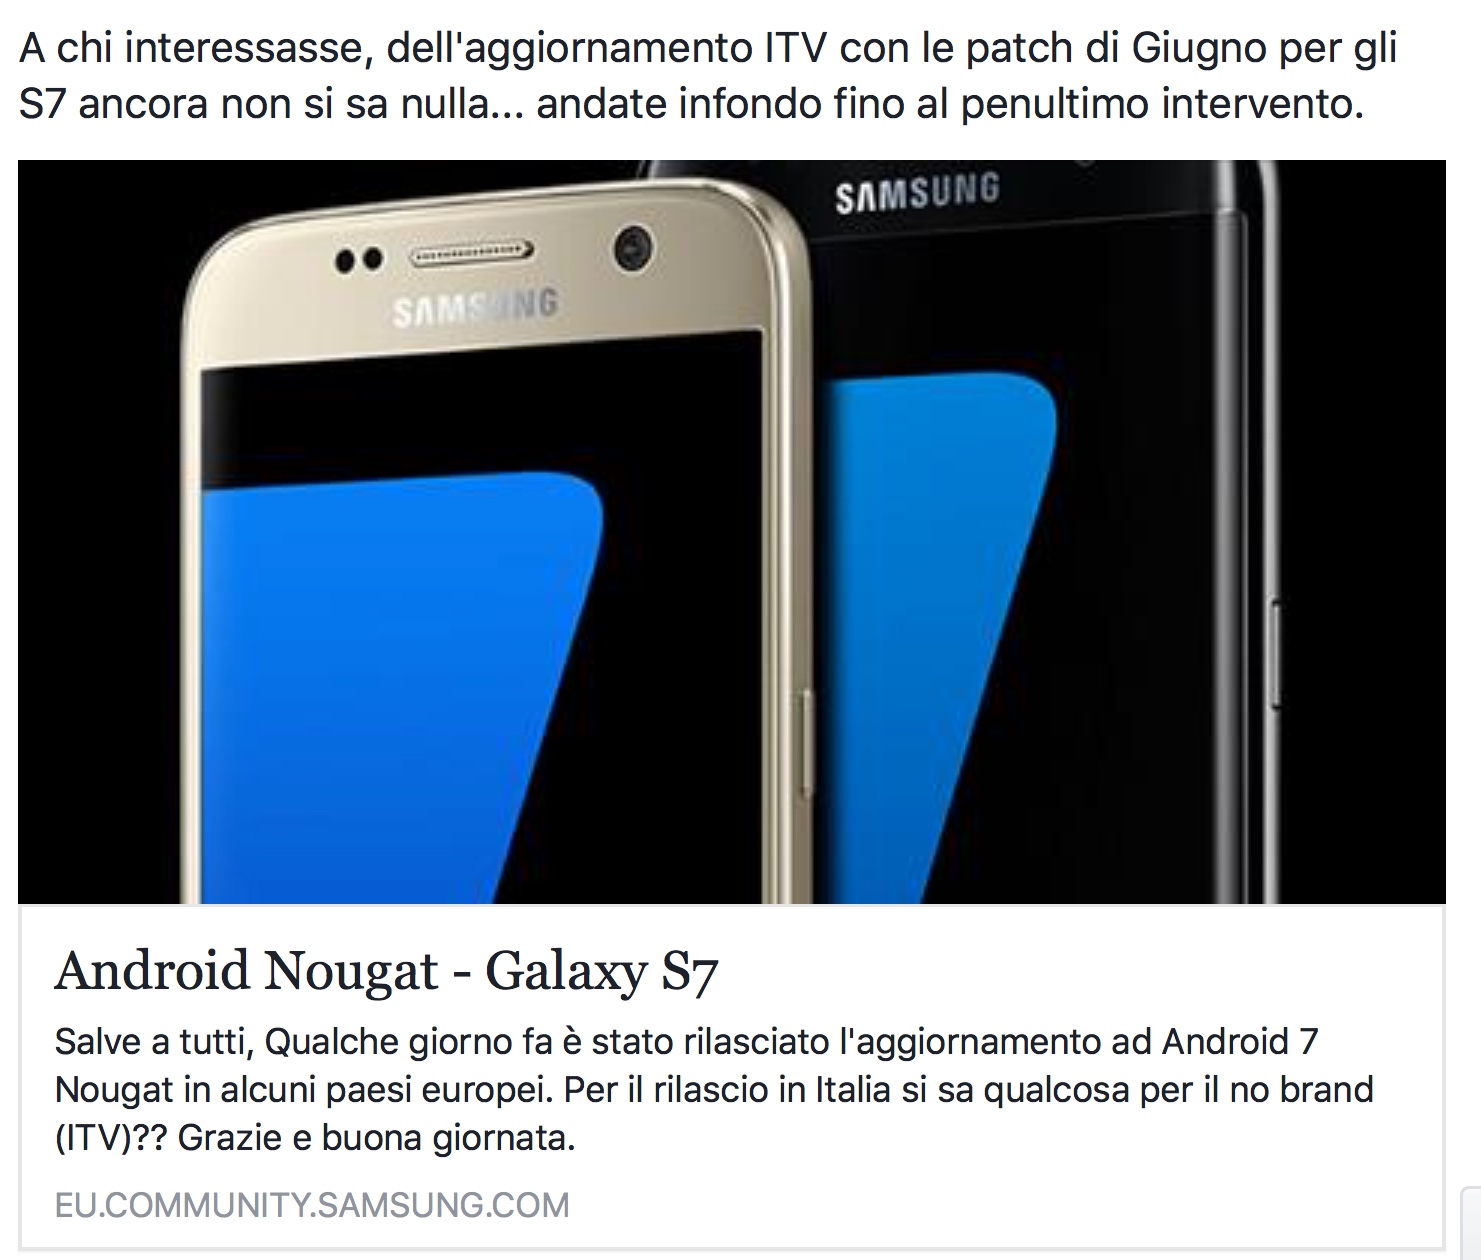 Android Nougat - Galaxy S7 - Pagina 29 - Samsung Community